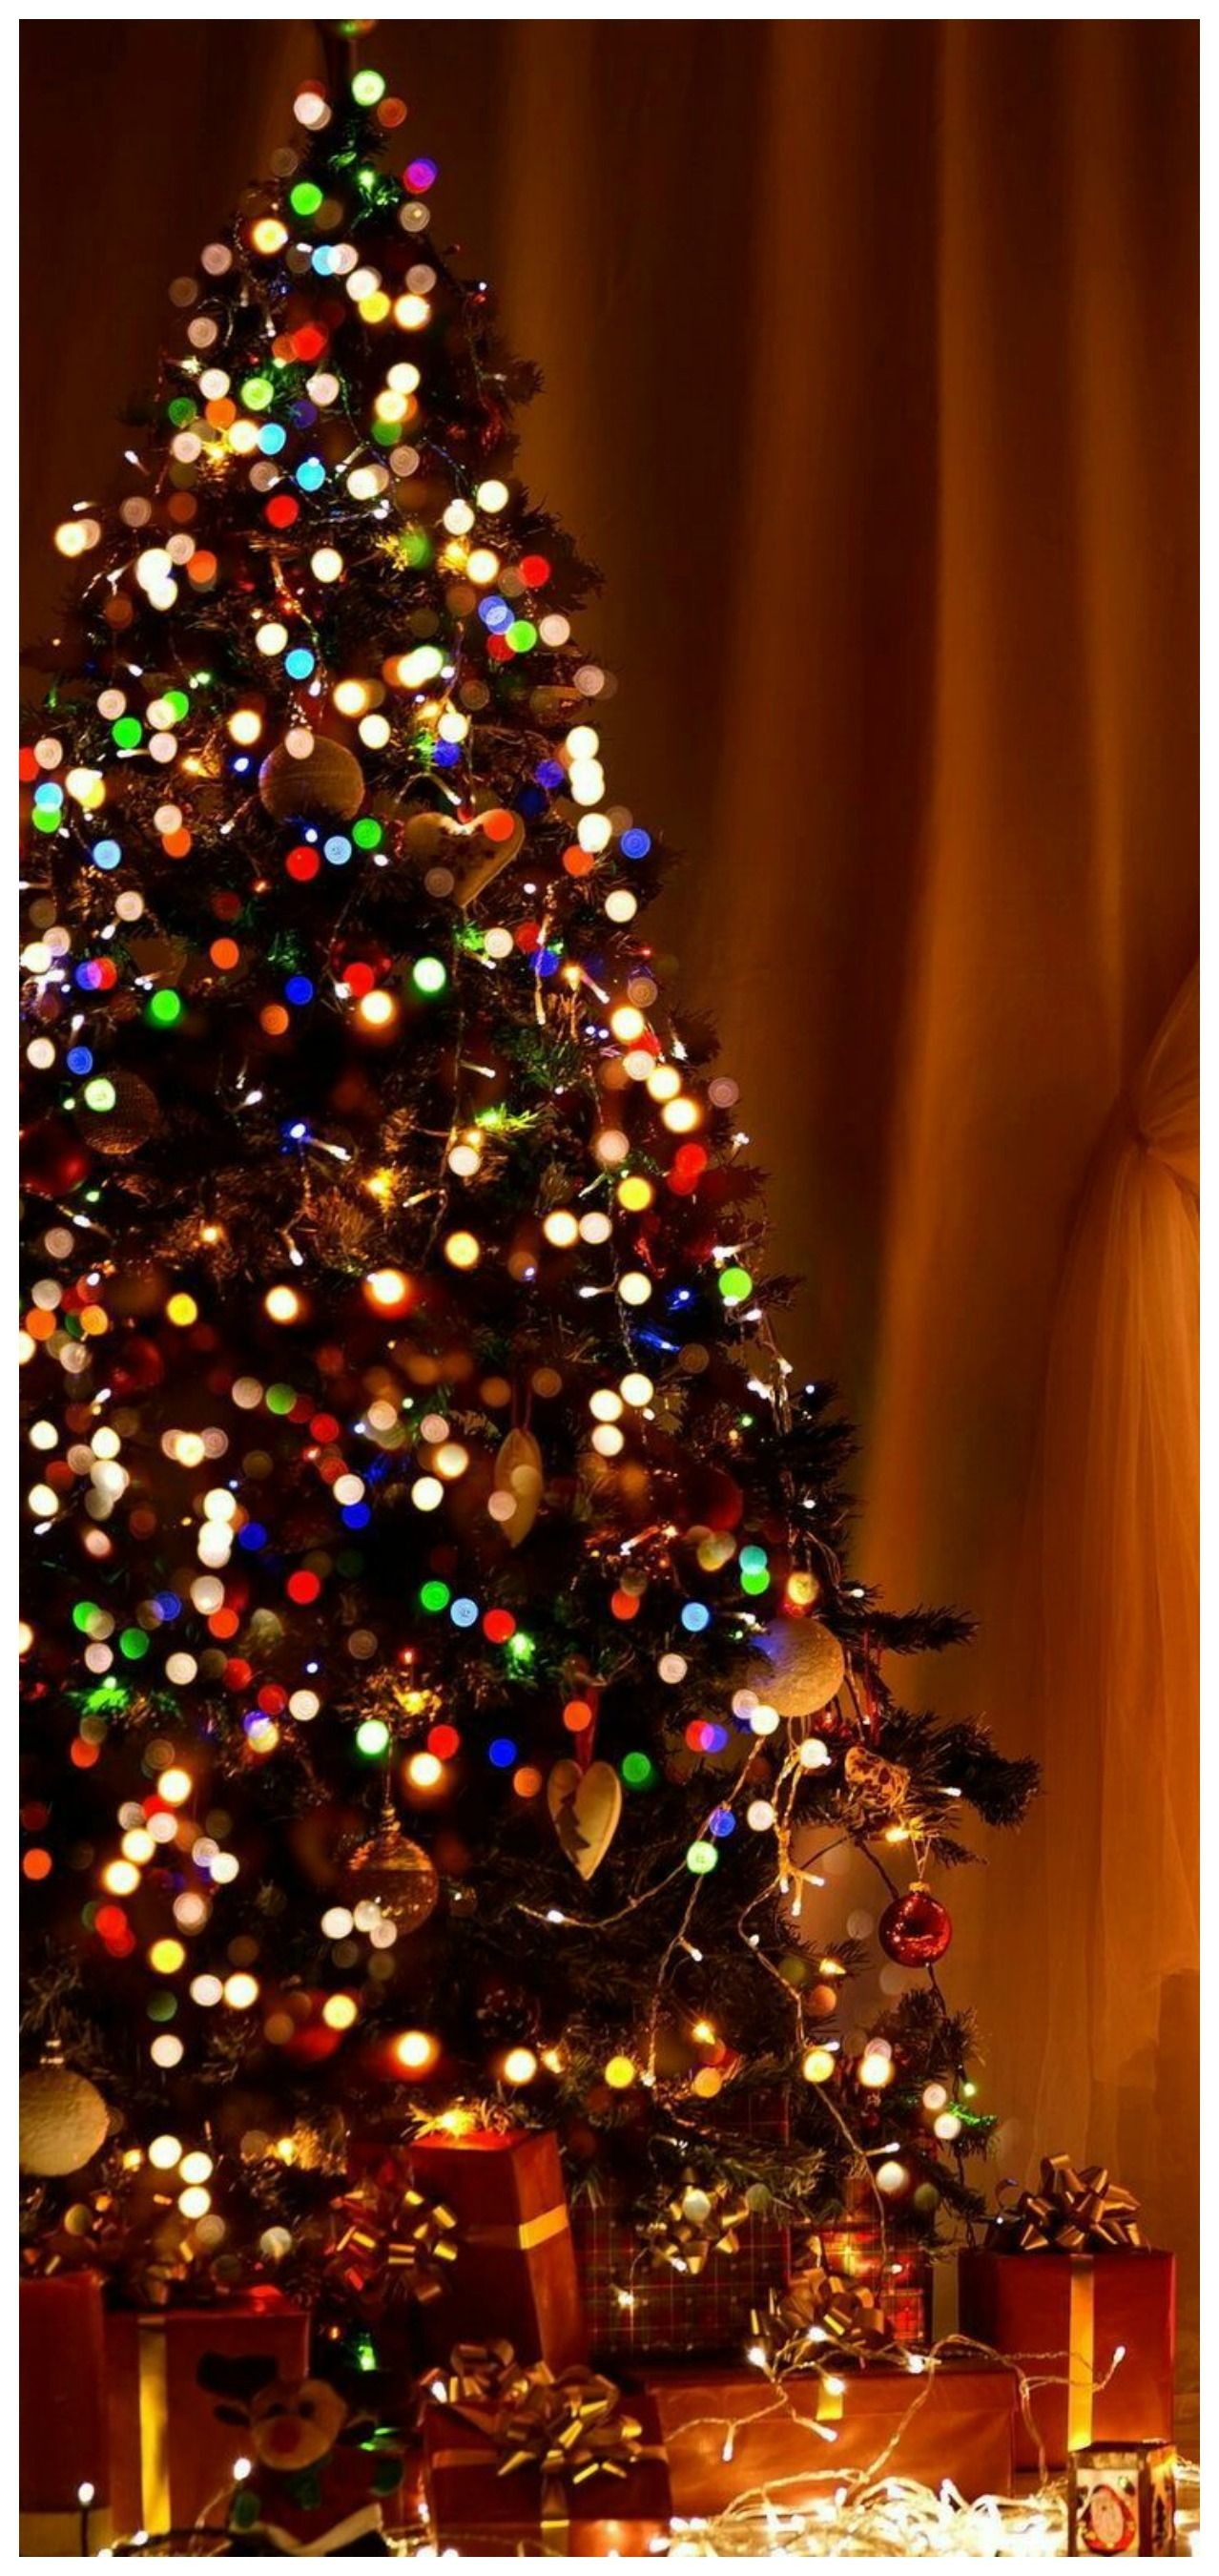 christmas wallpaper tumblr,christmas tree,christmas decoration,tree,christmas ornament,oregon pine